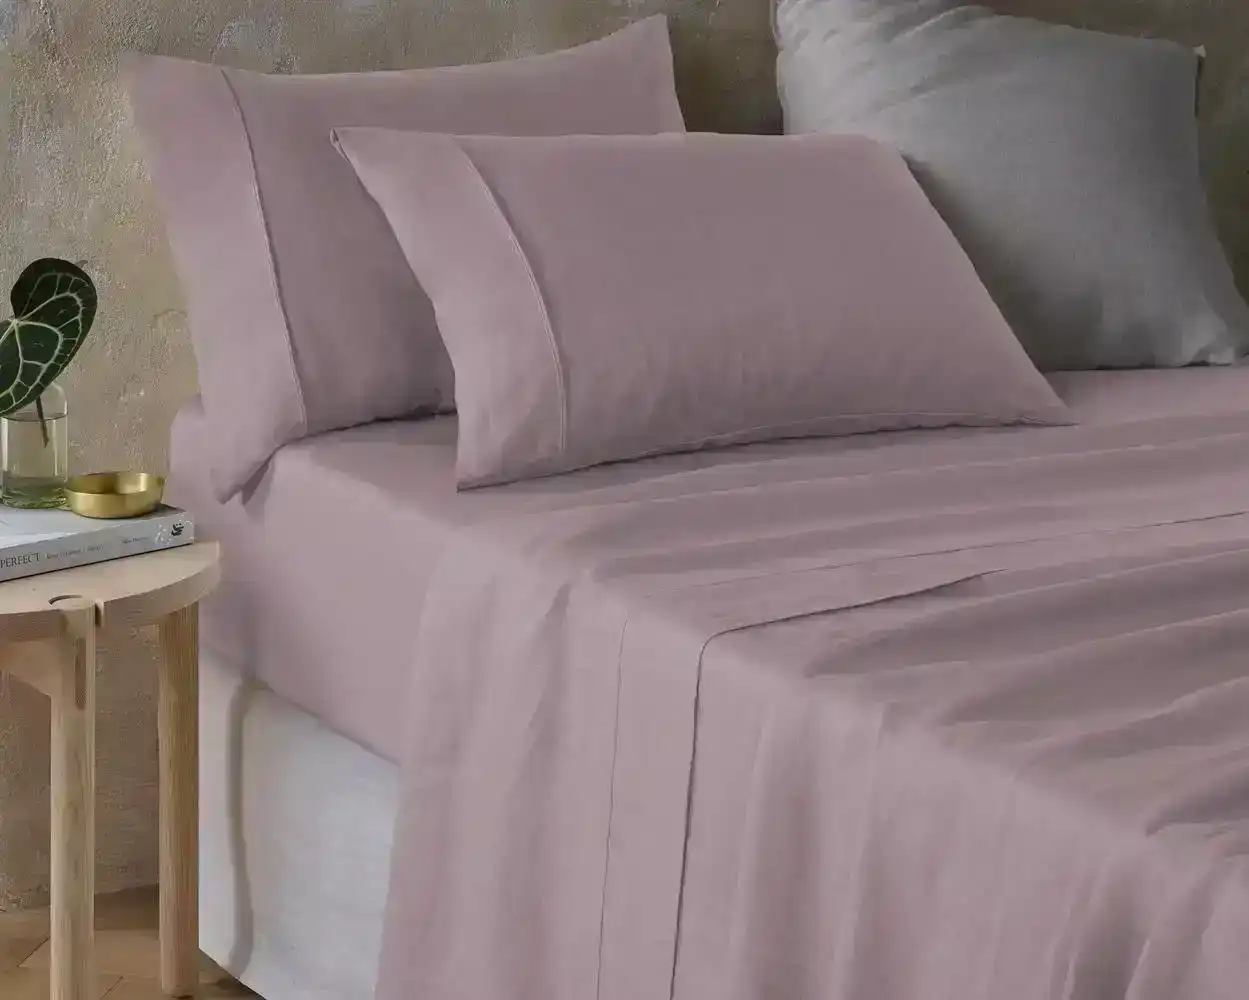 Vintage Design Pale Mauve Hemp Sheet Set - Queen Bed